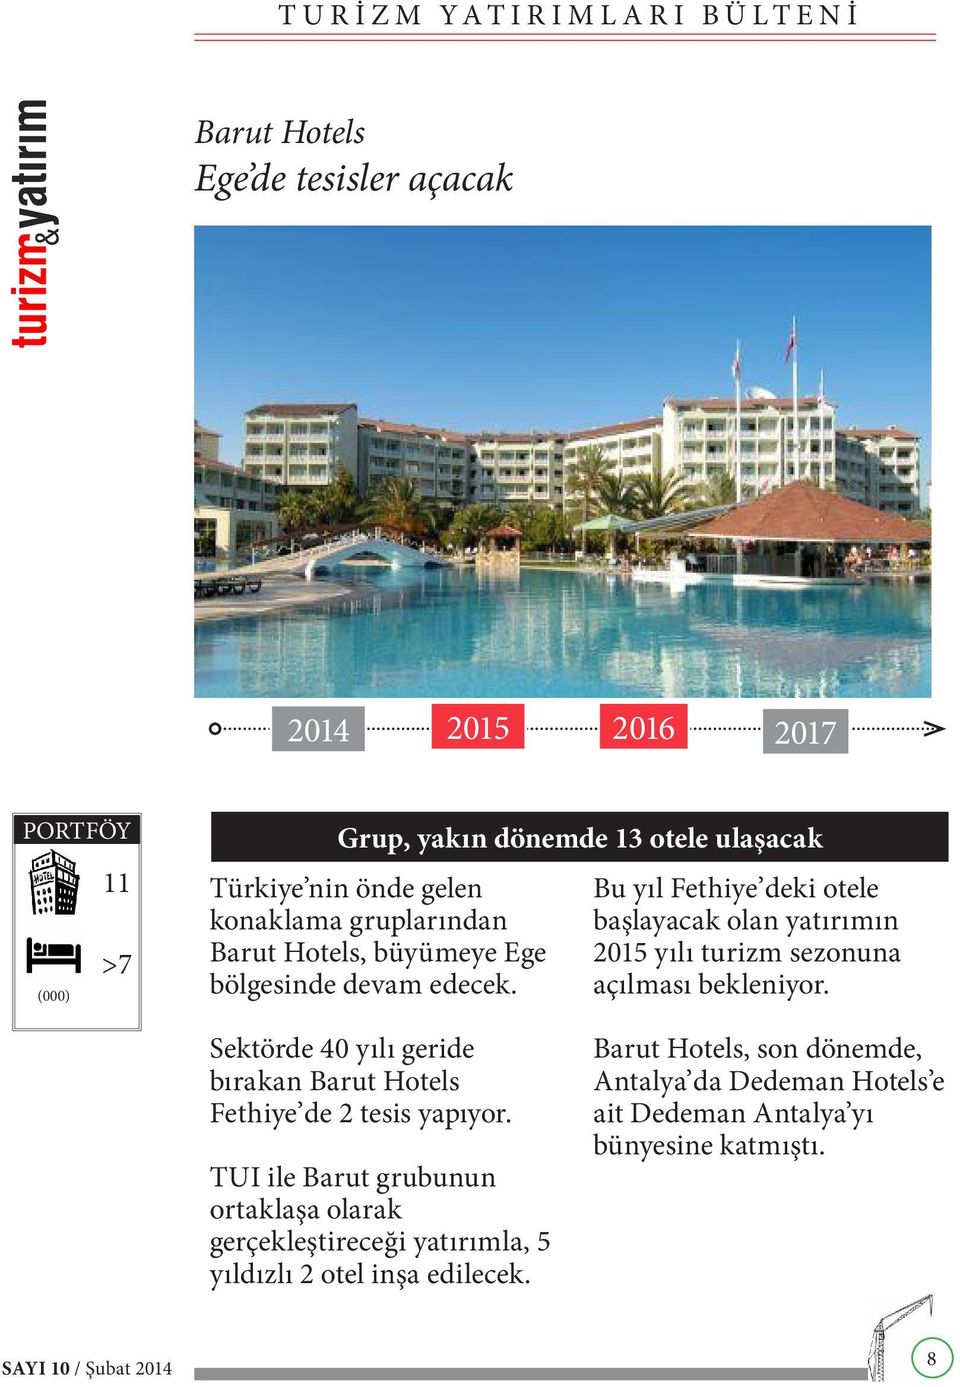 Bu yıl Fethiye deki otele başlayacak olan yatırımın 2015 yılı turizm sezonuna açılması bekleniyor.